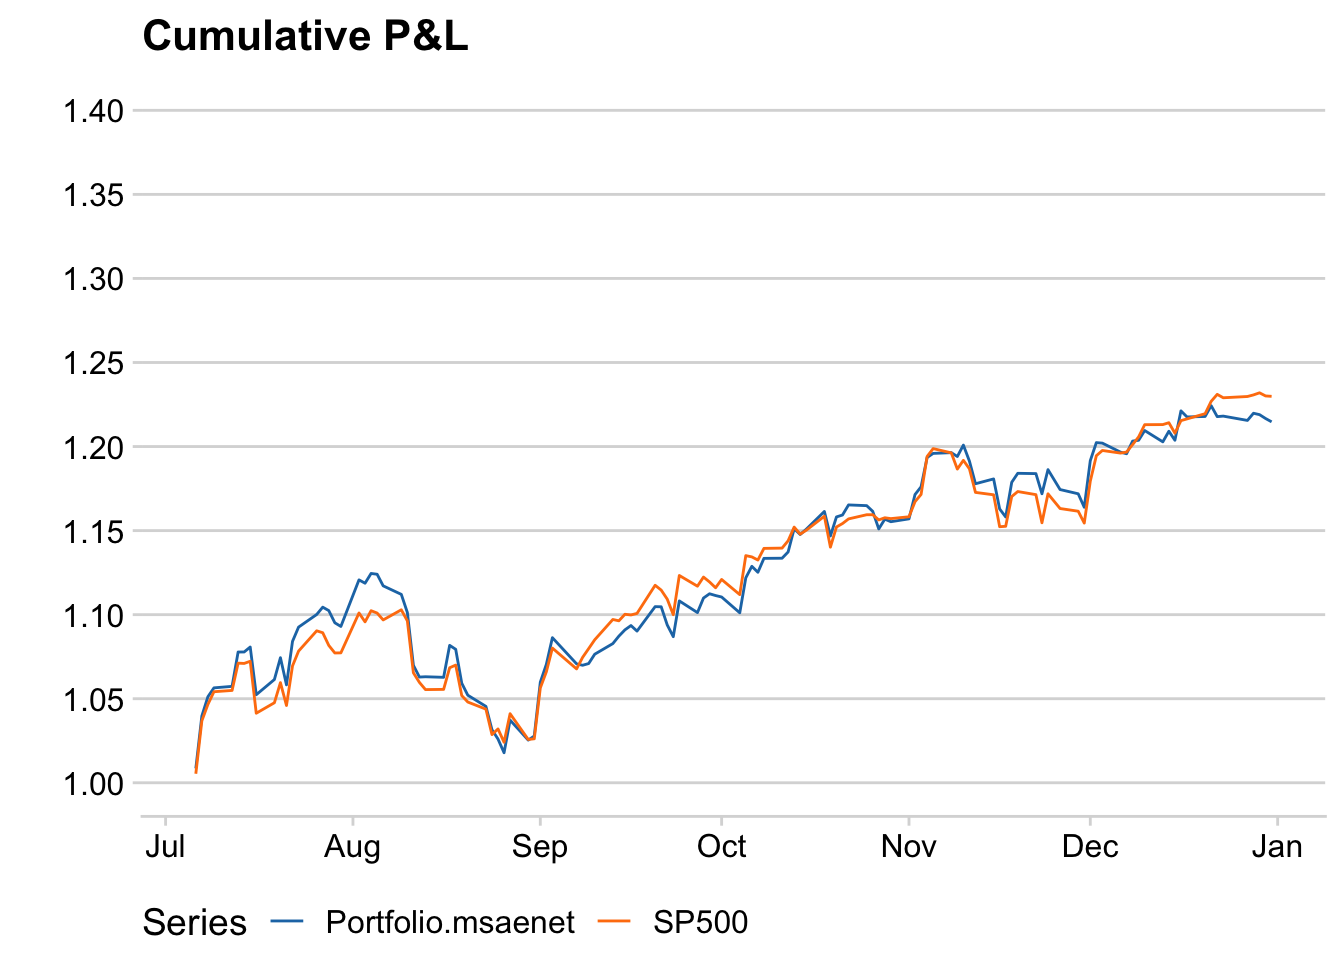 msaenet portfolio and SP500 cumulative P&L.